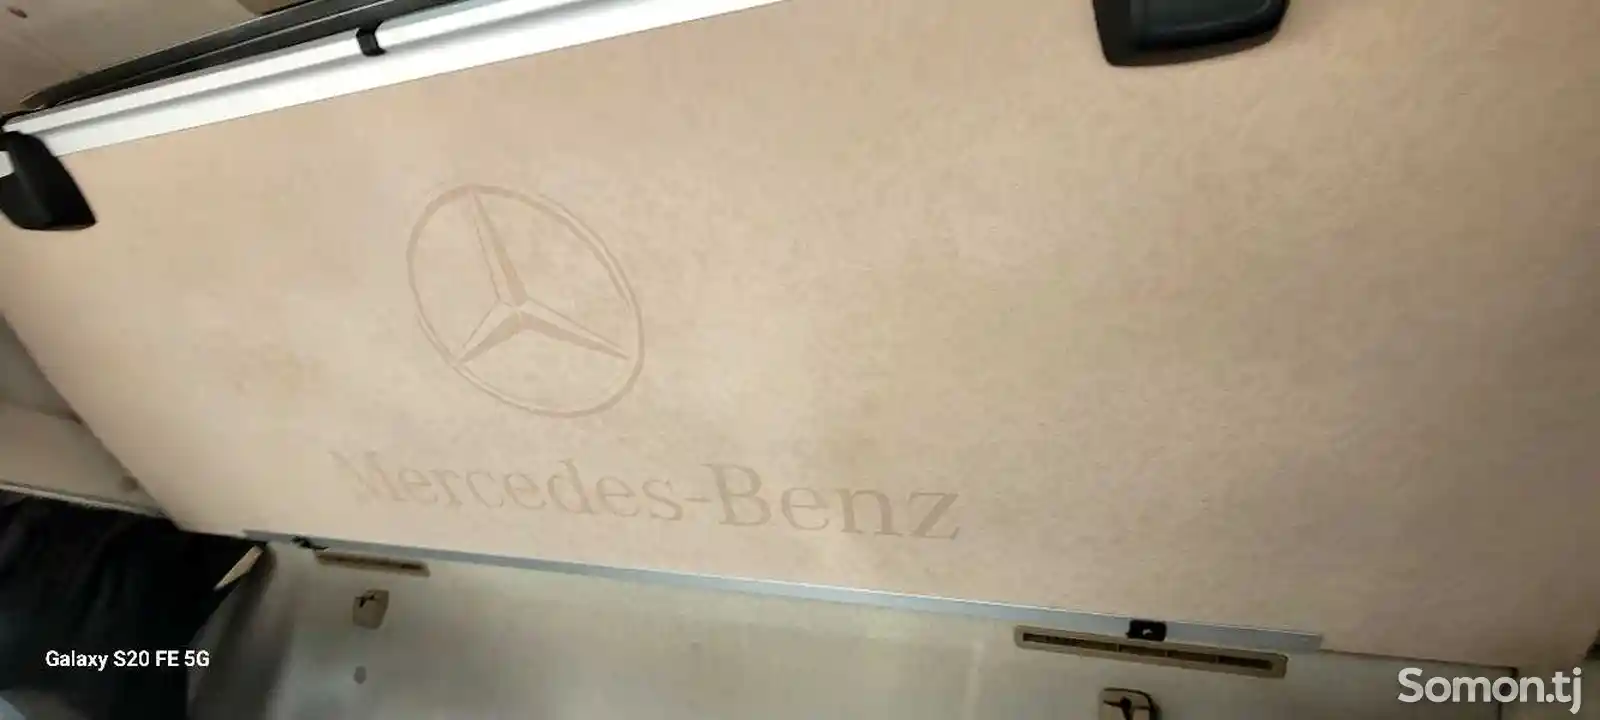 Седельный тягач Mercedes-Benz, 2012-12